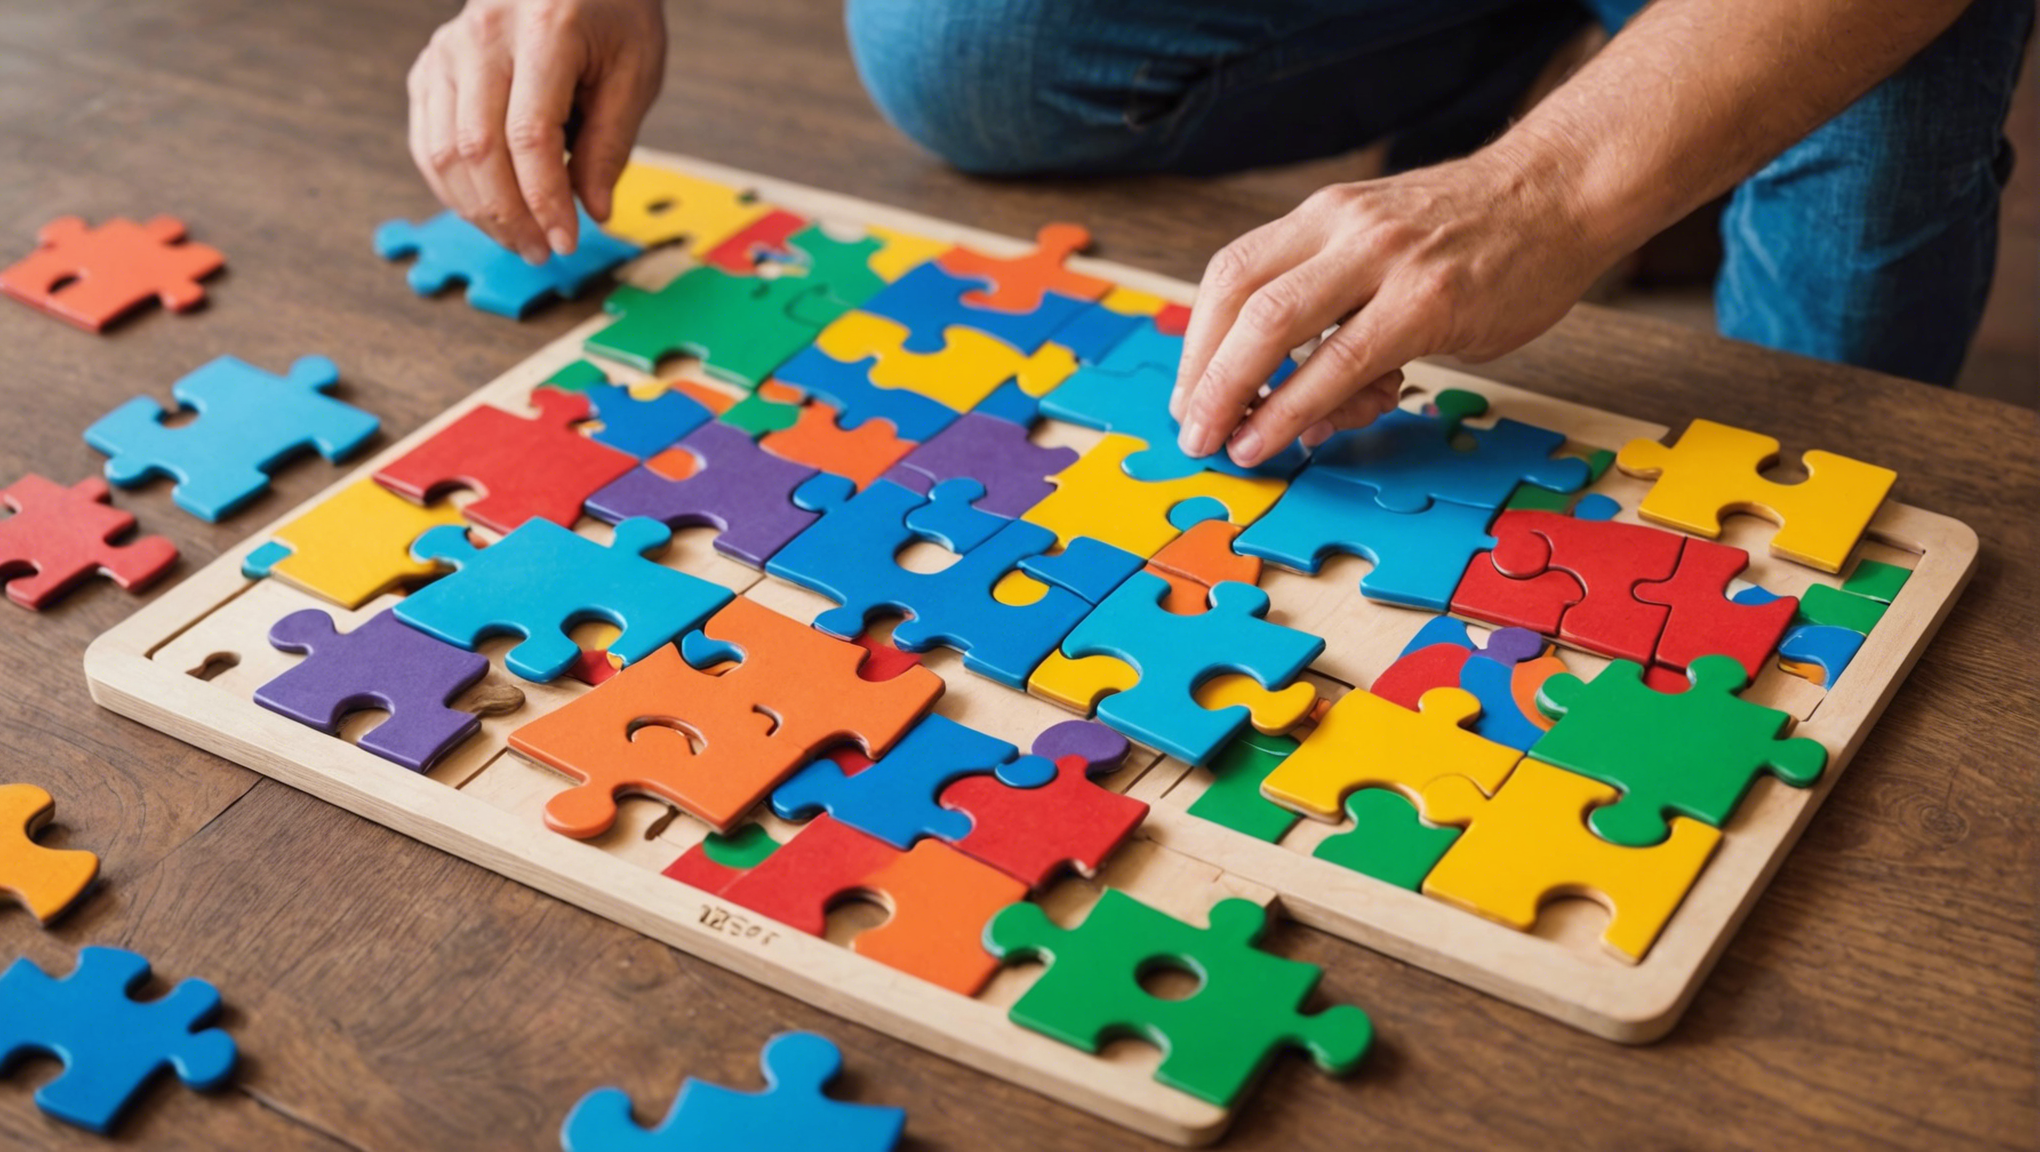 découvrez les puzzles et encastrements, une activité ludique et bénéfique pour favoriser le développement cognitif chez les enfants. trouvez des jeux éducatifs et stimulants pour aider vos enfants à développer leurs capacités mentales de manière amusante.